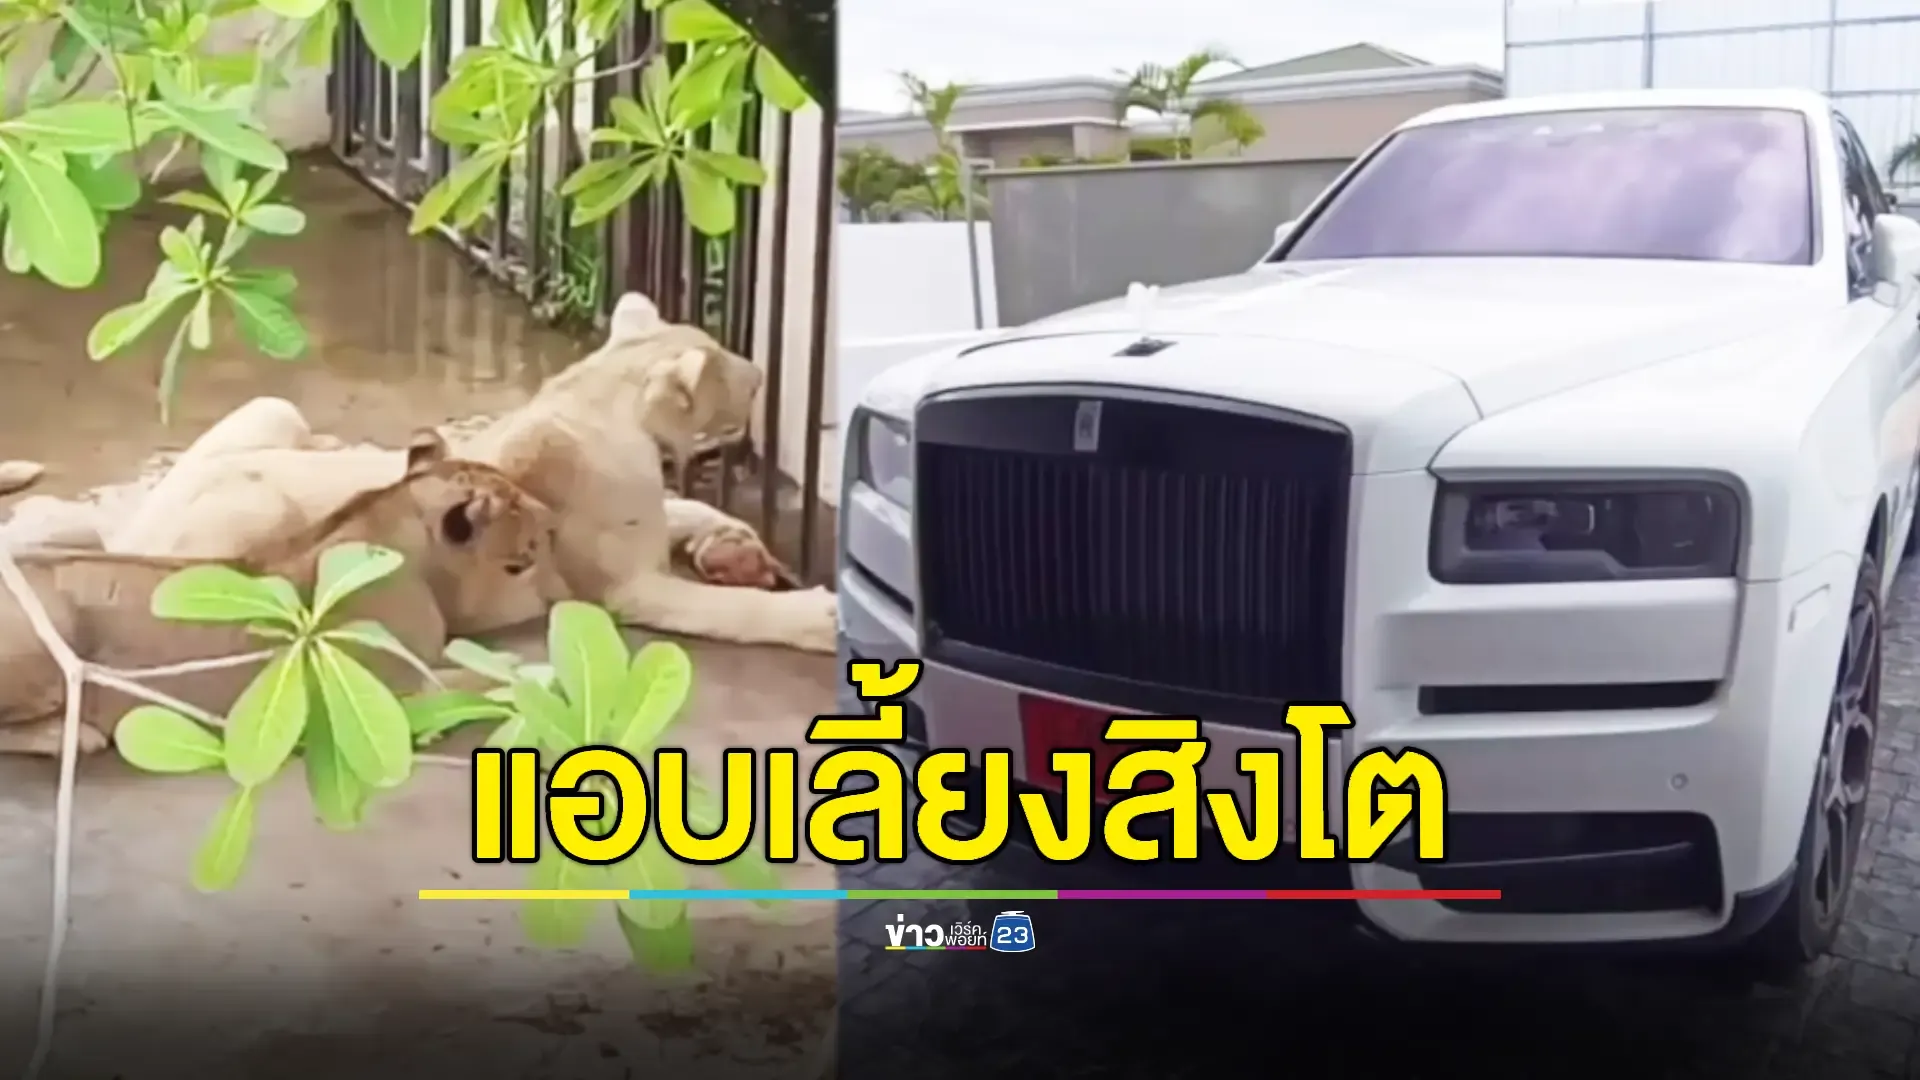 ค้นบ้านหรูชาวจีนพบรถหรูนำเข้า 2 คัน สิงโต 2 ตัว